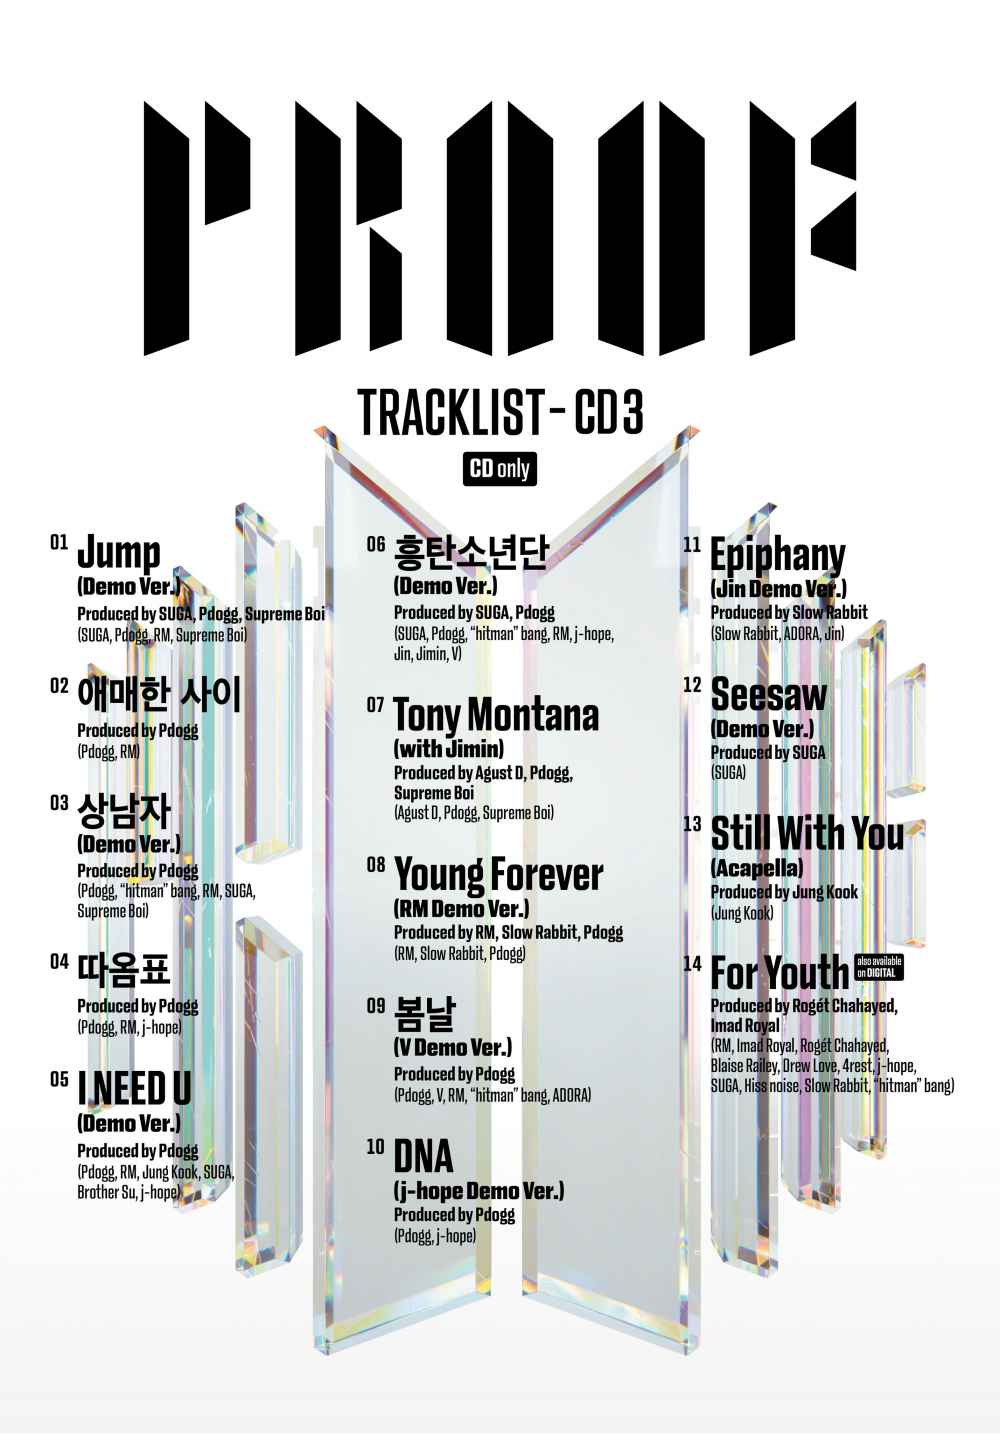 Daftar Lagu CD 3 Album Antologi 'Proof' BTS Hanya Tersedia dalam Bentuk Fisik, Penggemar Protes Gegara Ini